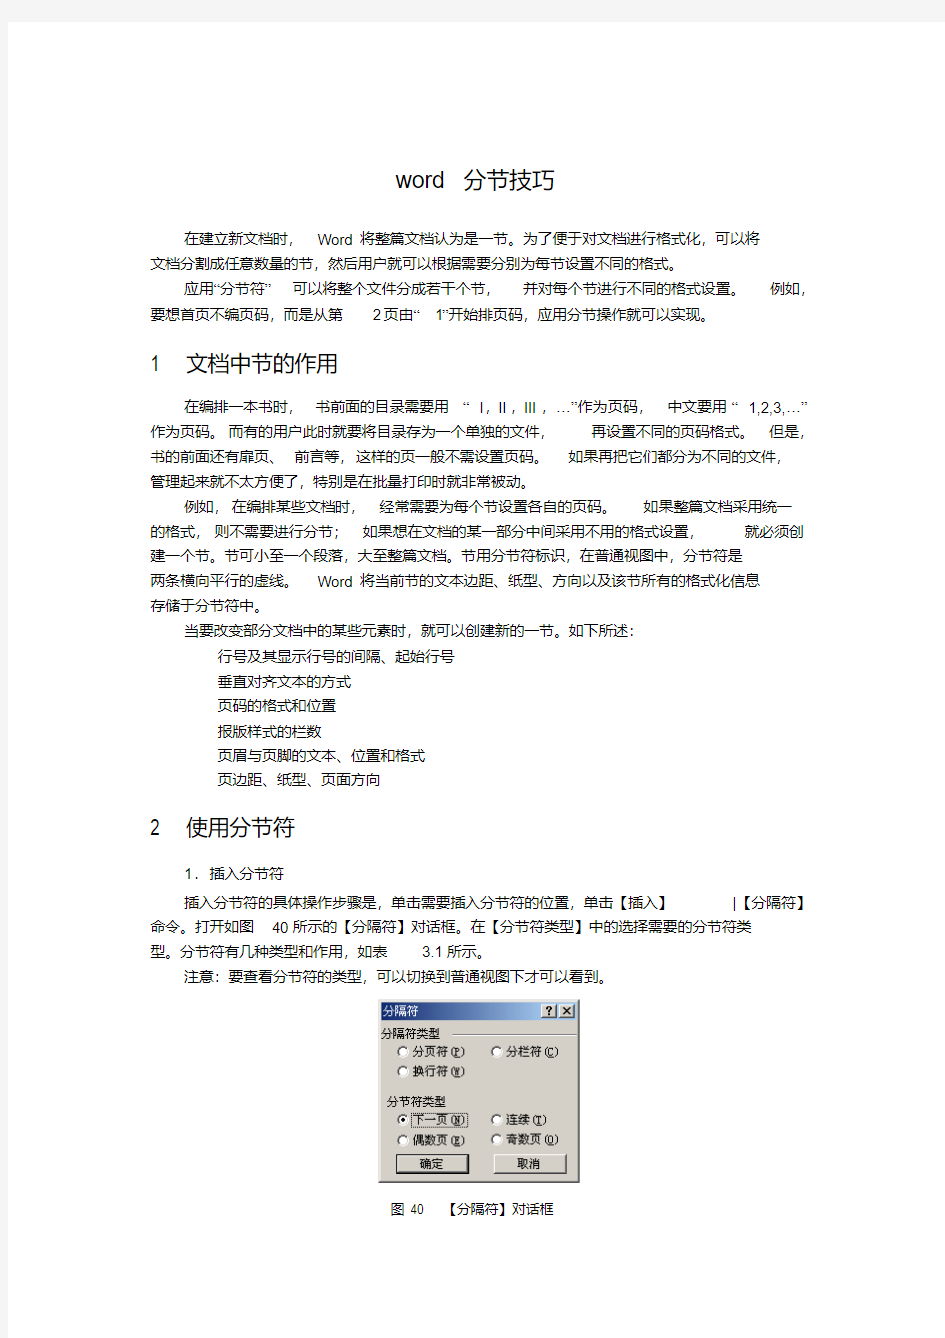 word分节技巧-精选.pdf